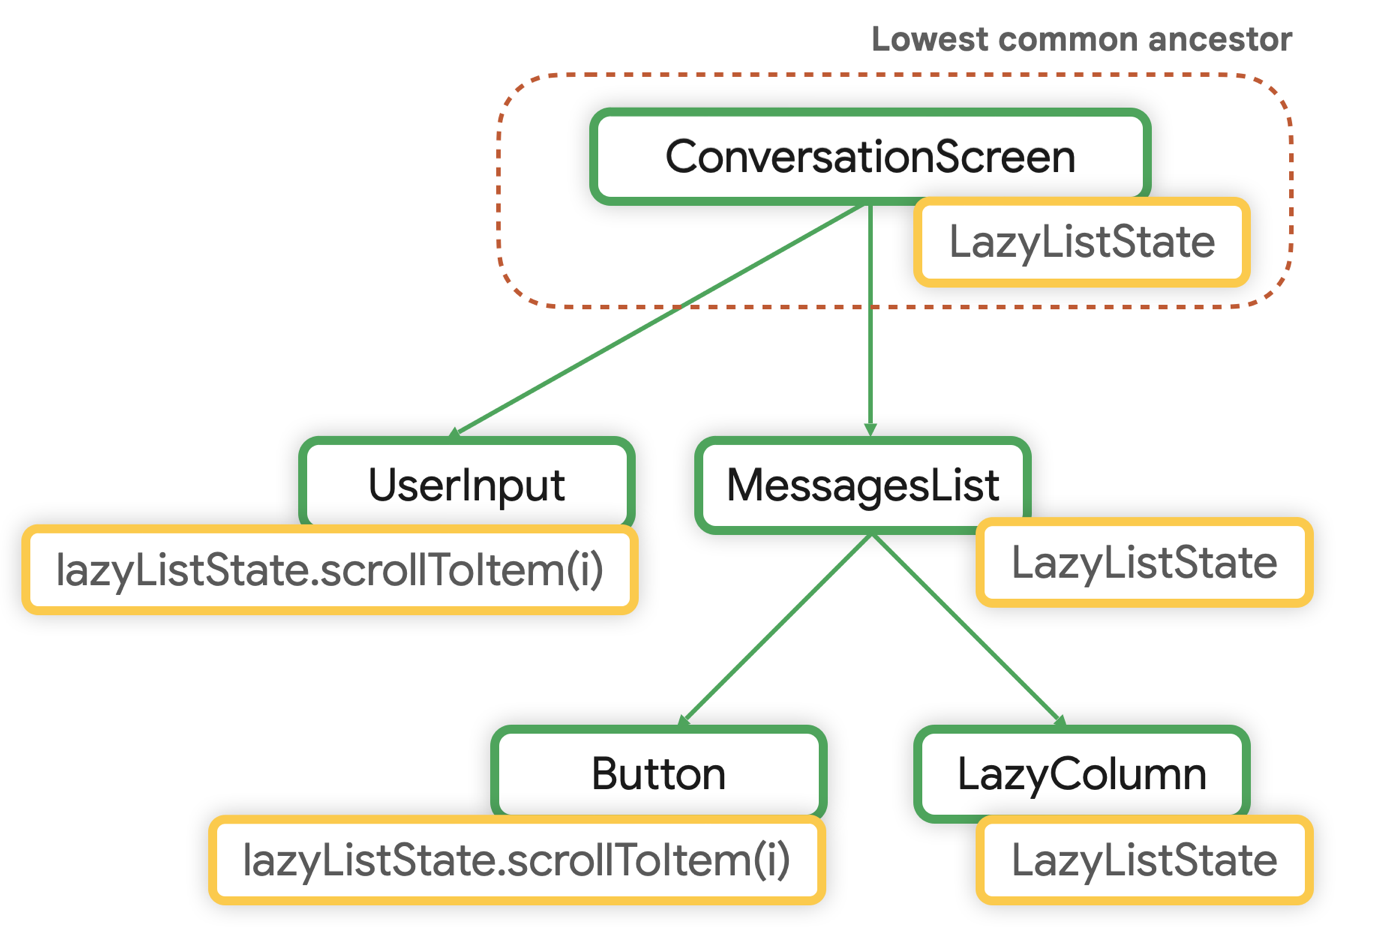 El principal común más bajo para LazyListState es ConversationScreen.